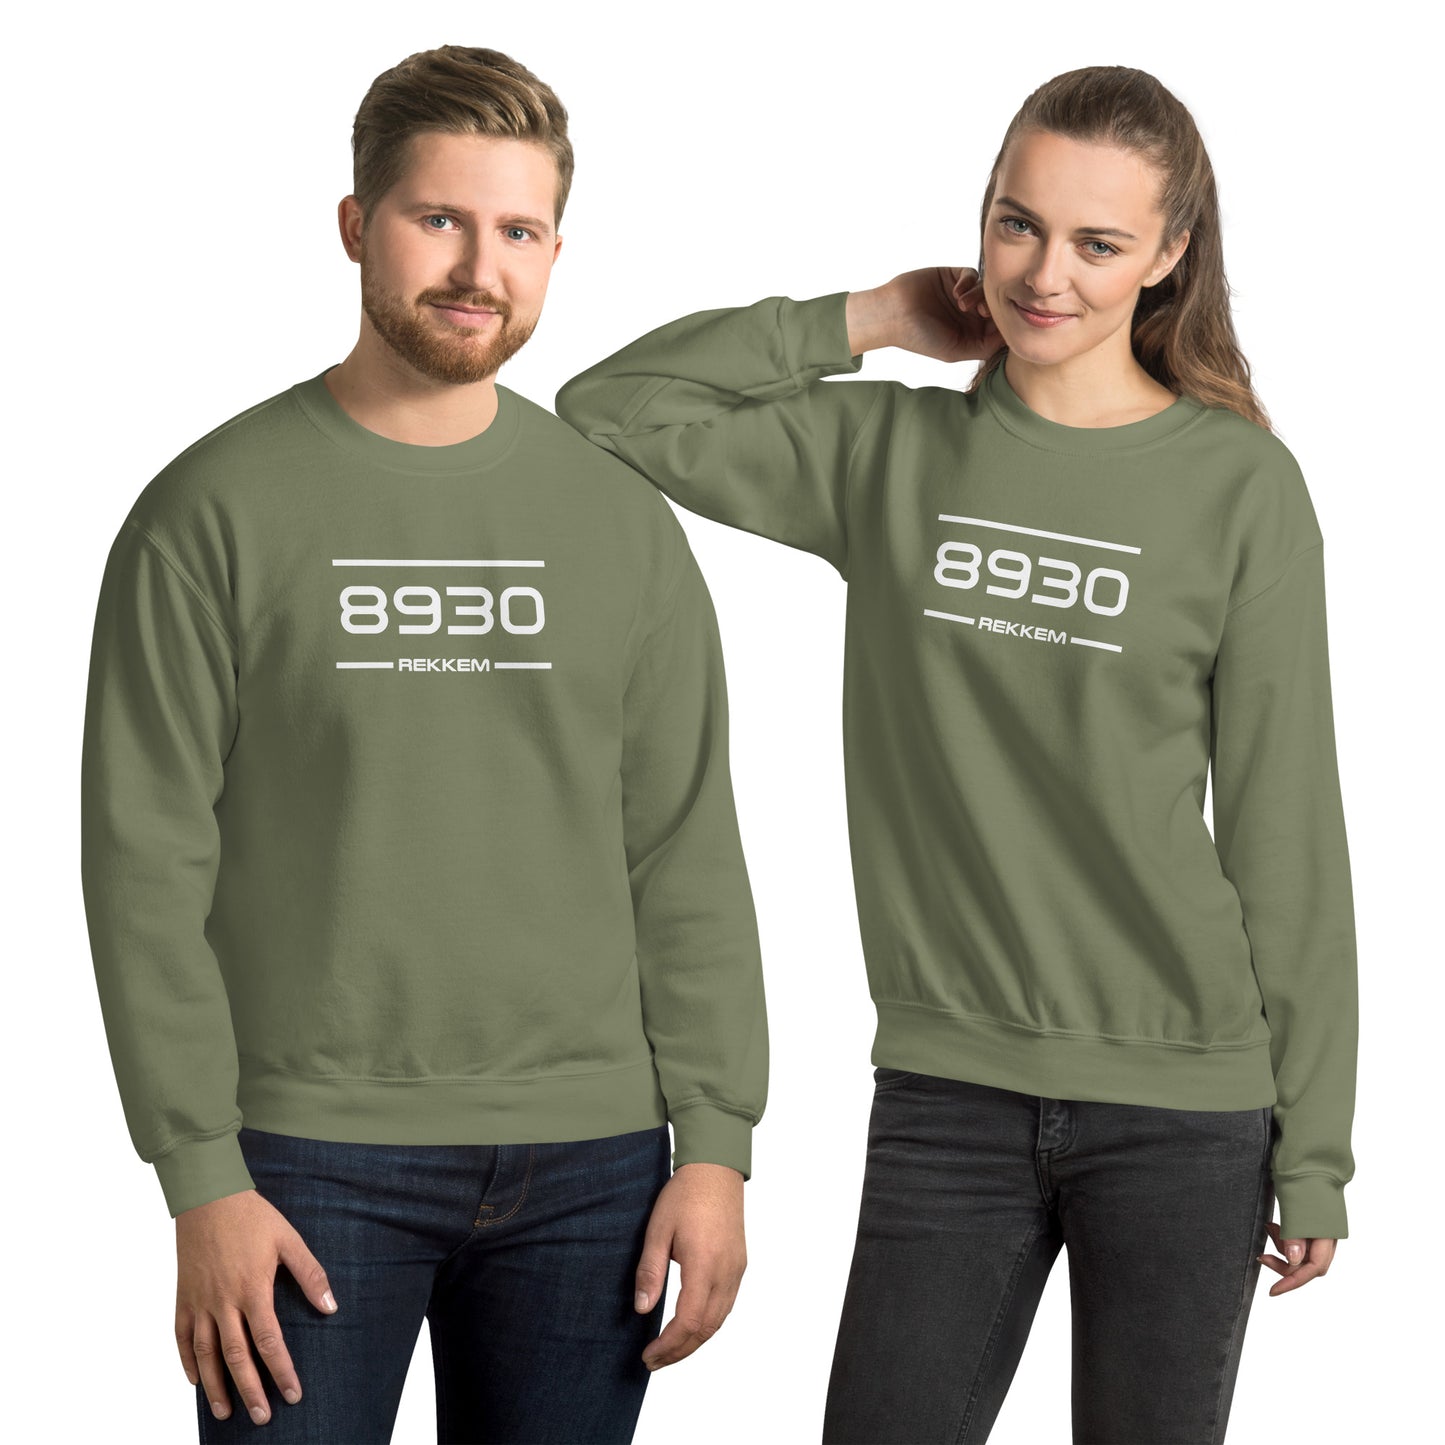 Sweater - 8930 - Rekkem (M/V)